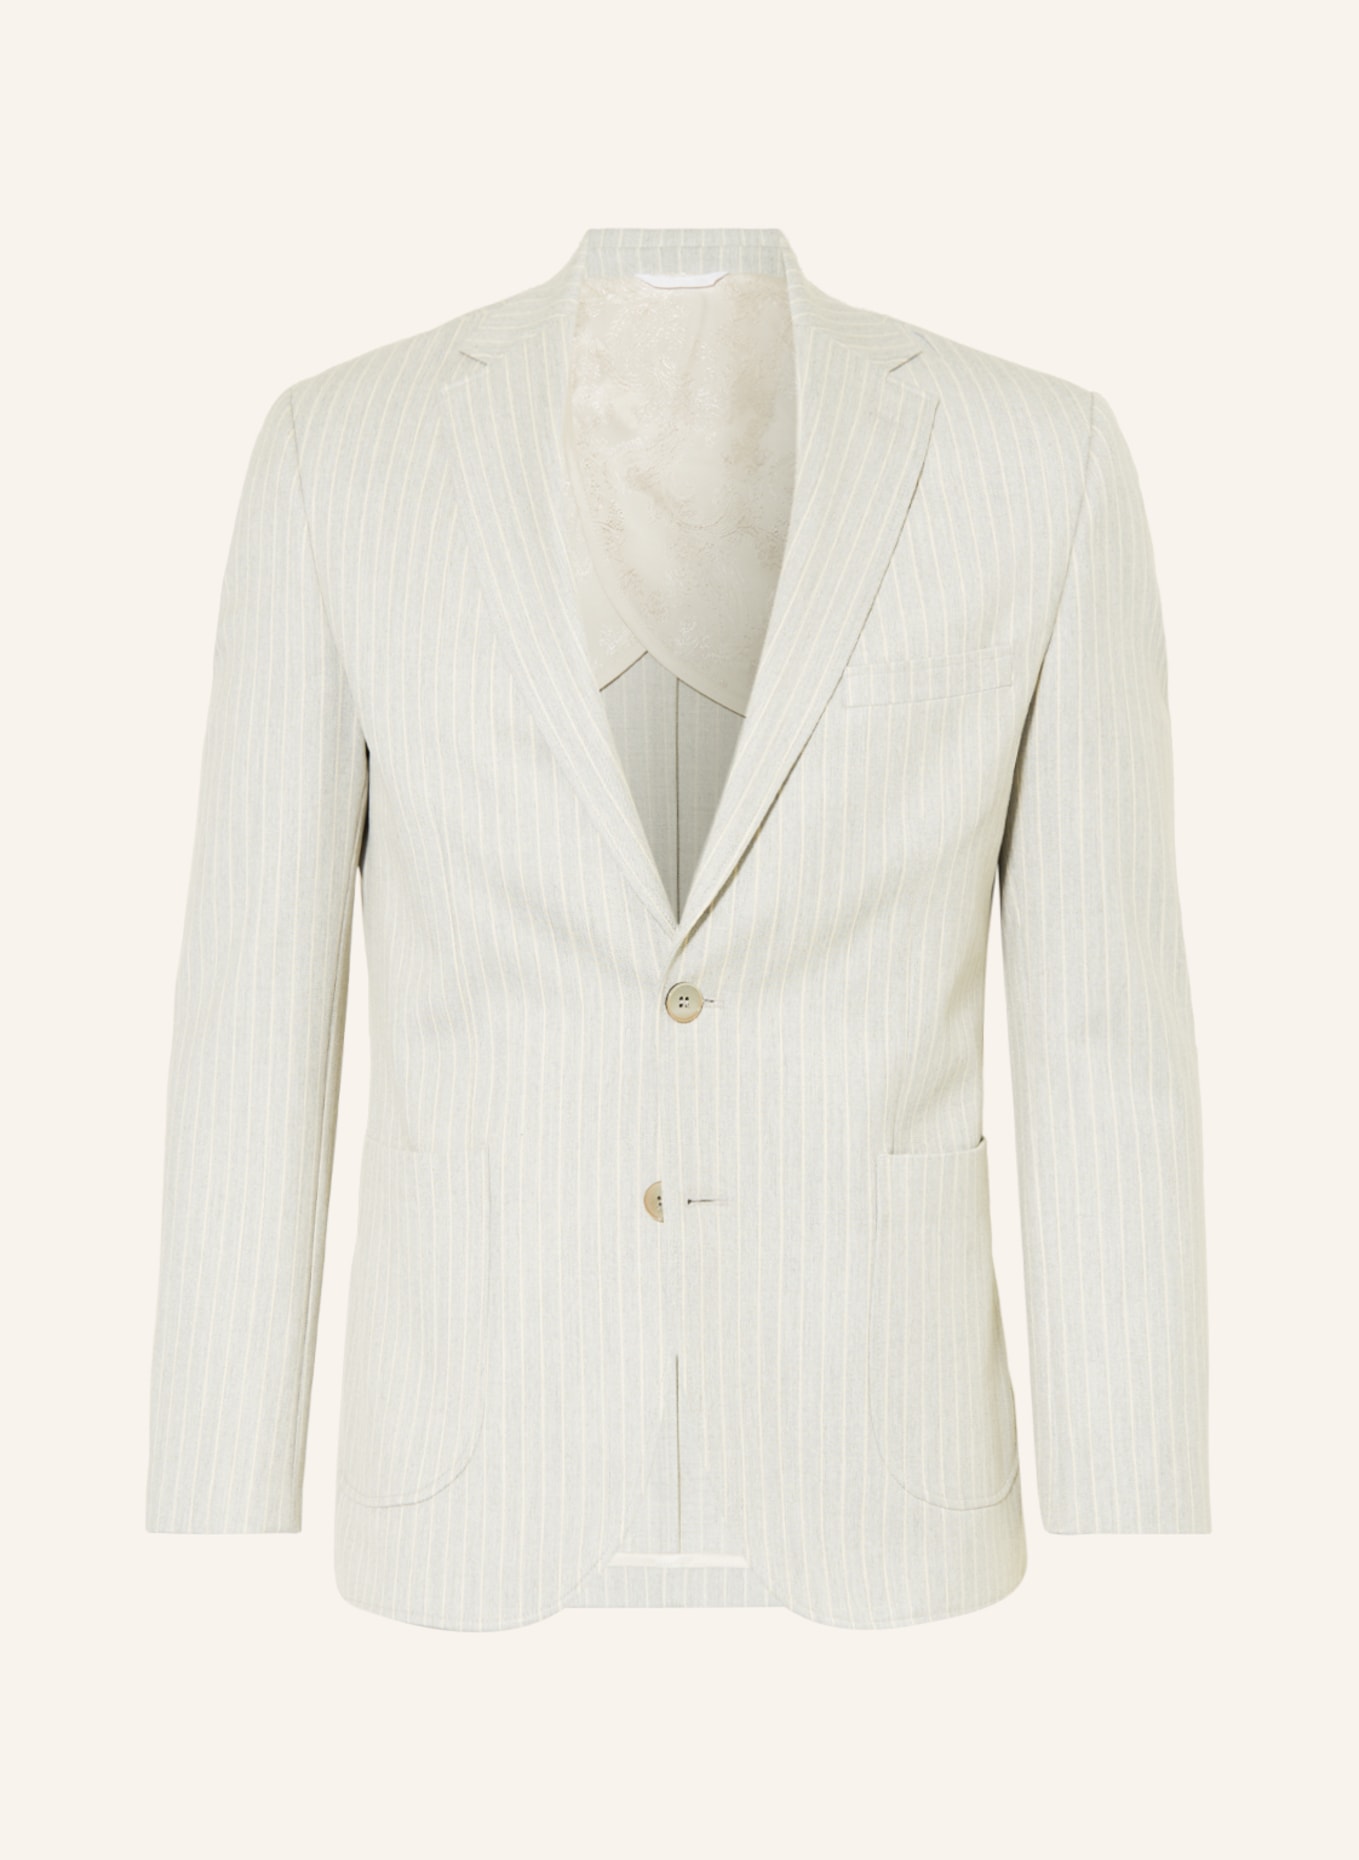 PAUL Suit jacket Slim Fit, Color: LIGHT GRAY/ ECRU (Image 1)